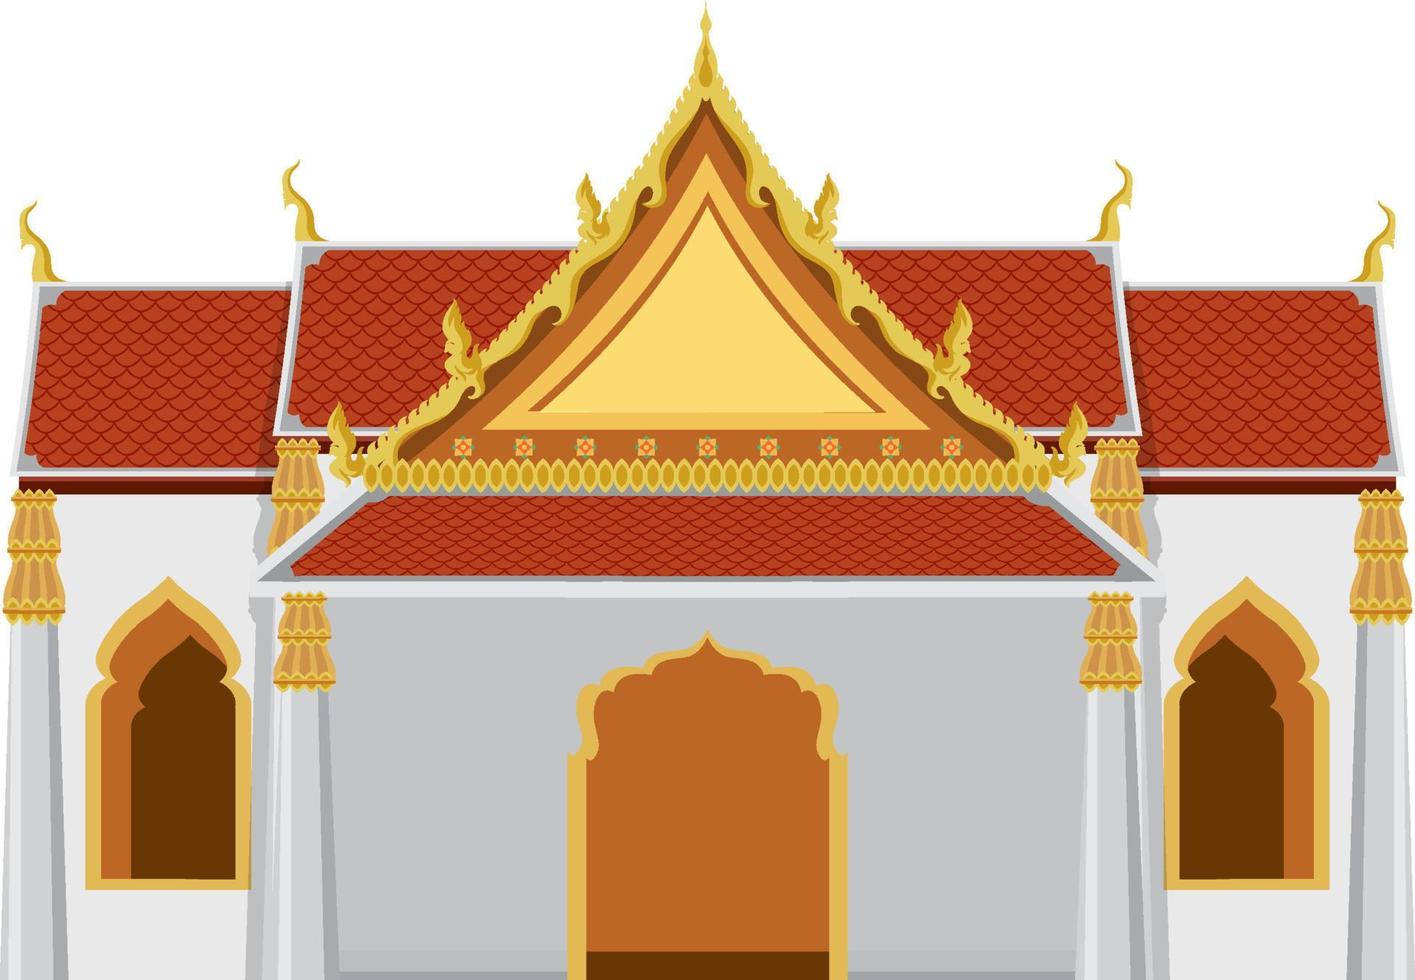 thailändischer tempel mit goldenem dach vektor